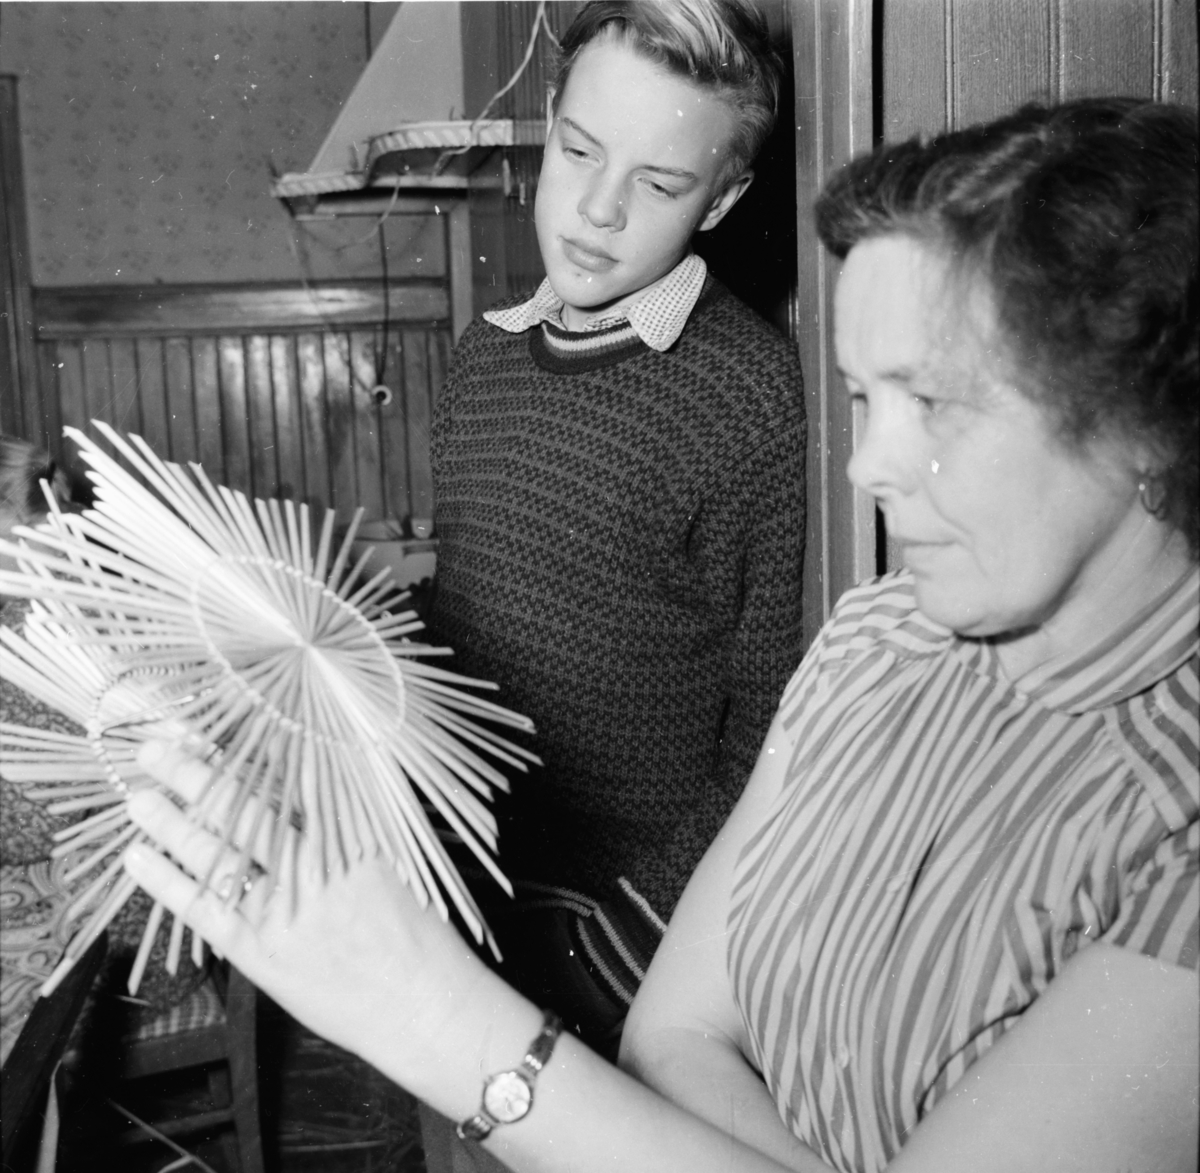 Halmslöjdskurs Bogården.
Pojken på bilden är Staffan Häger son till
redaktör P.W Häger Bollnäs.
1954